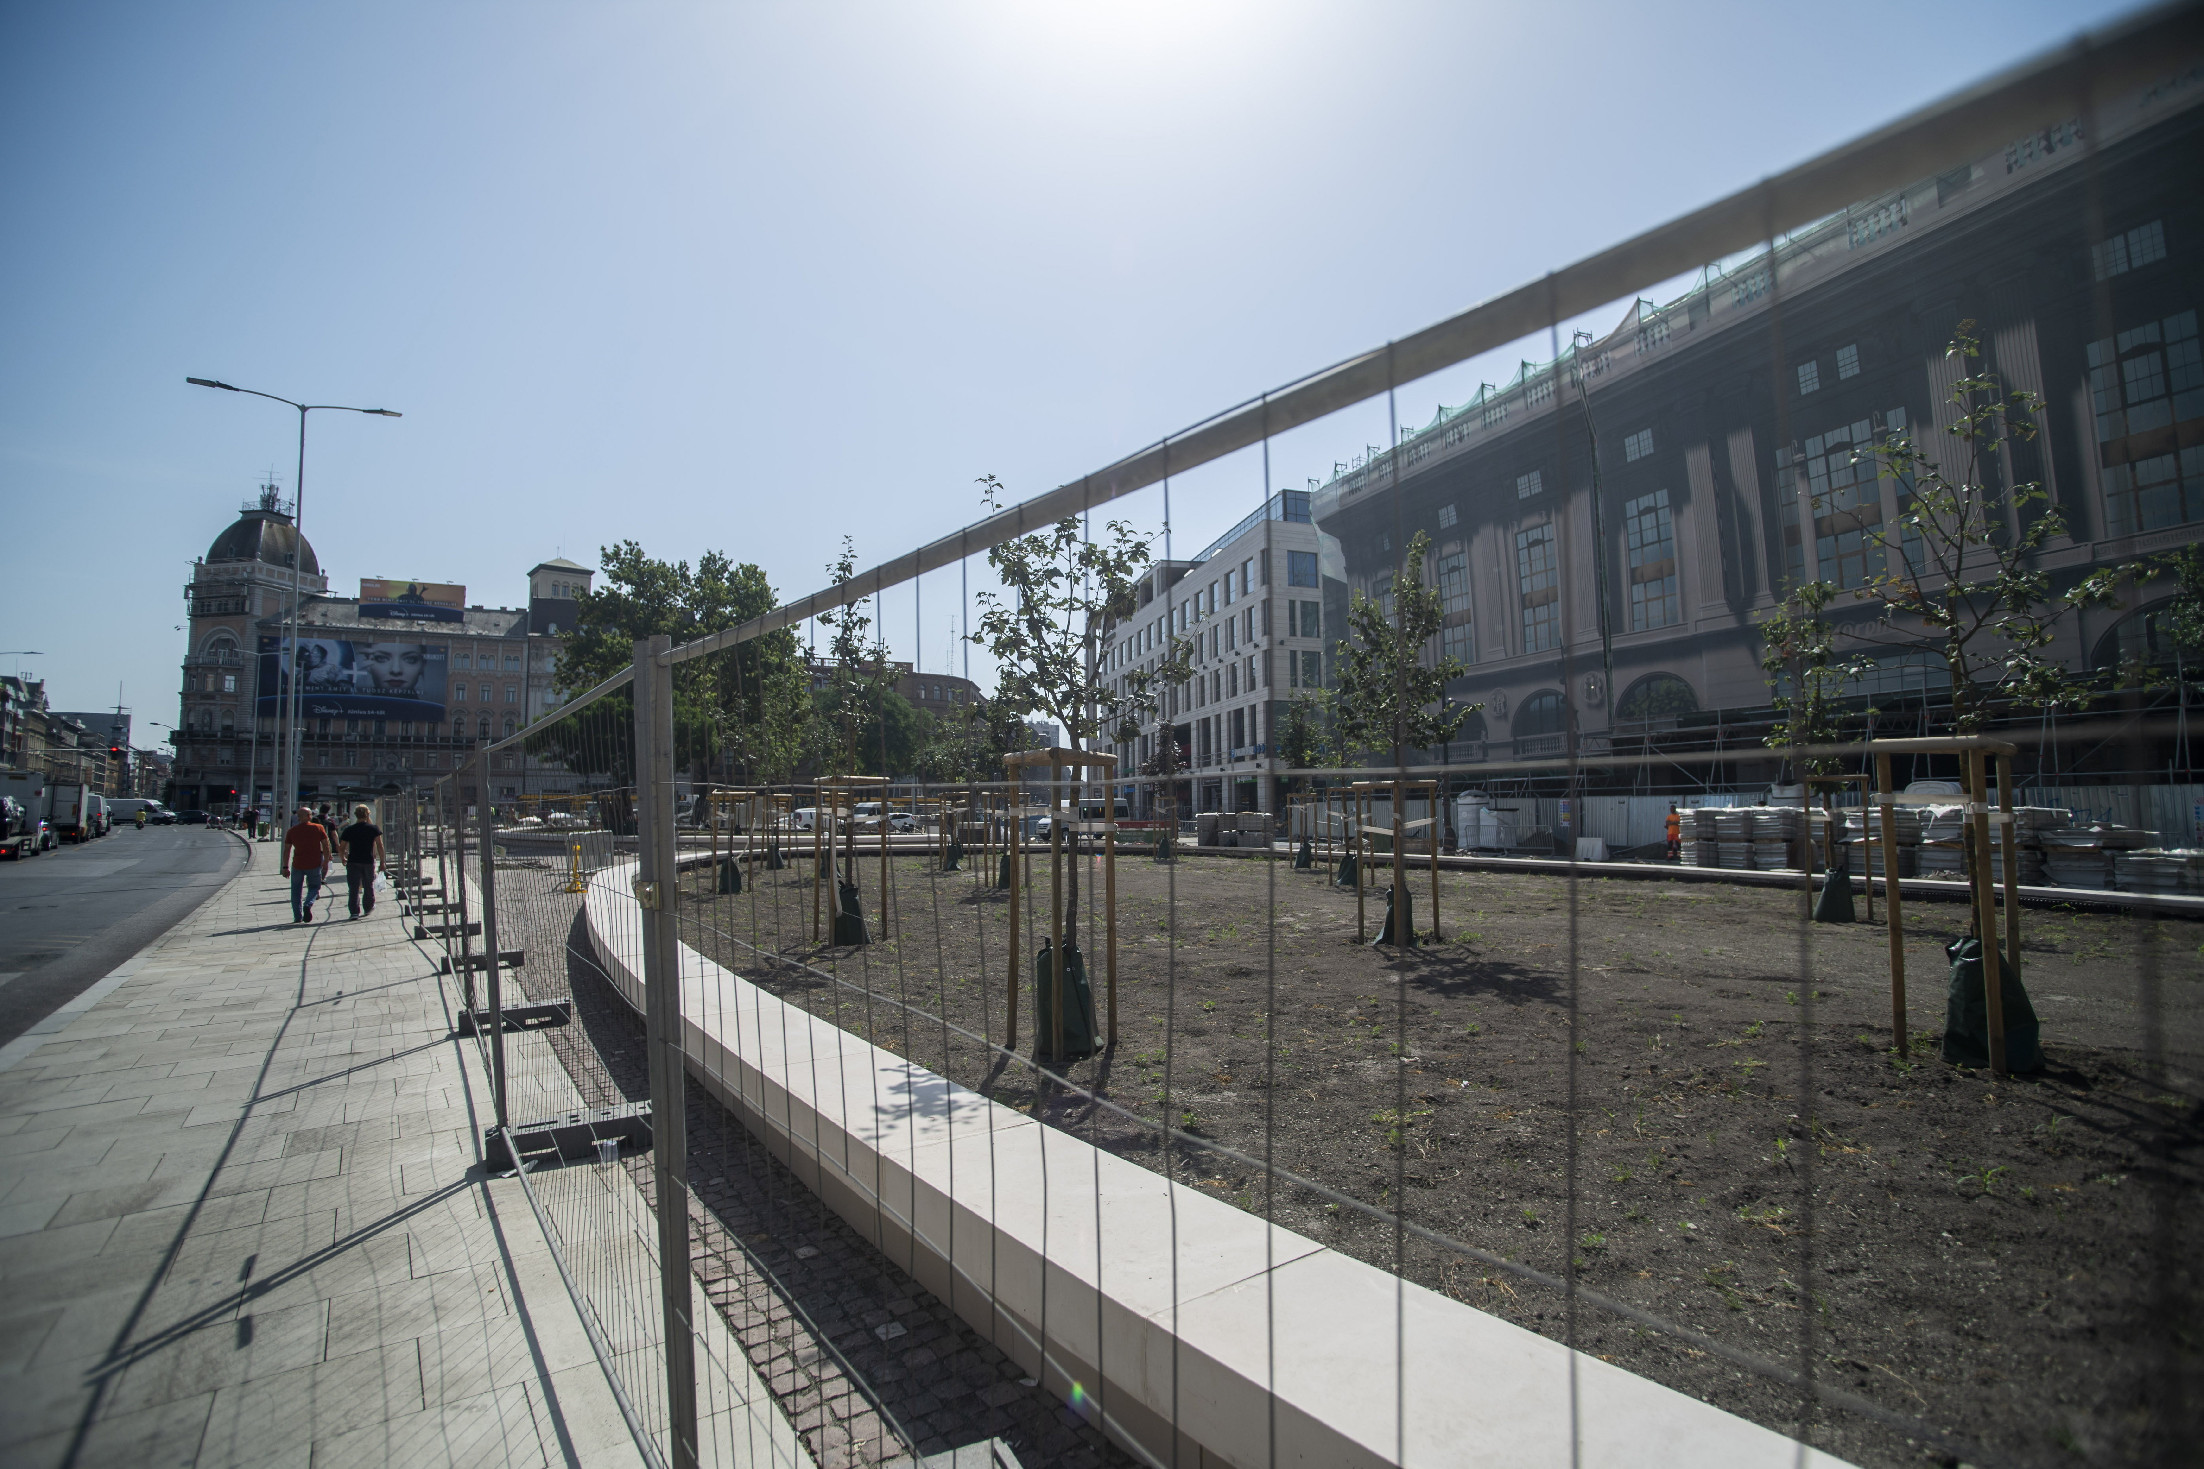 Nyolcvan fát ültetnek a megújuló Blaha Lujza térre